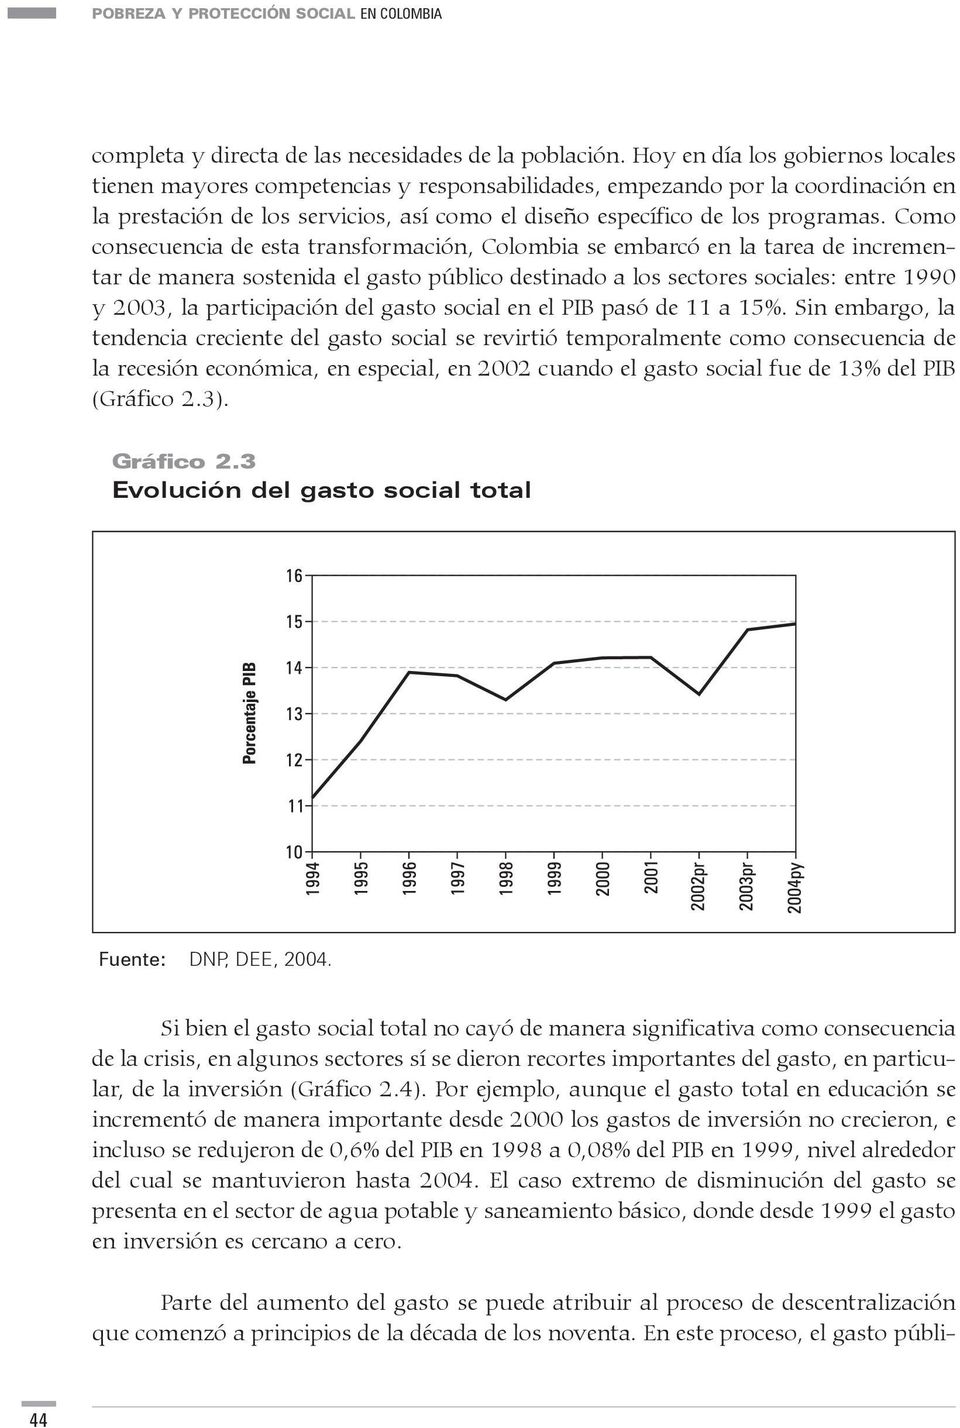 Como consecuencia de esta transformación, Colombia se embarcó en la tarea de incrementar de manera sostenida el gasto público destinado a los sectores sociales: entre 1990 y 2003, la participación